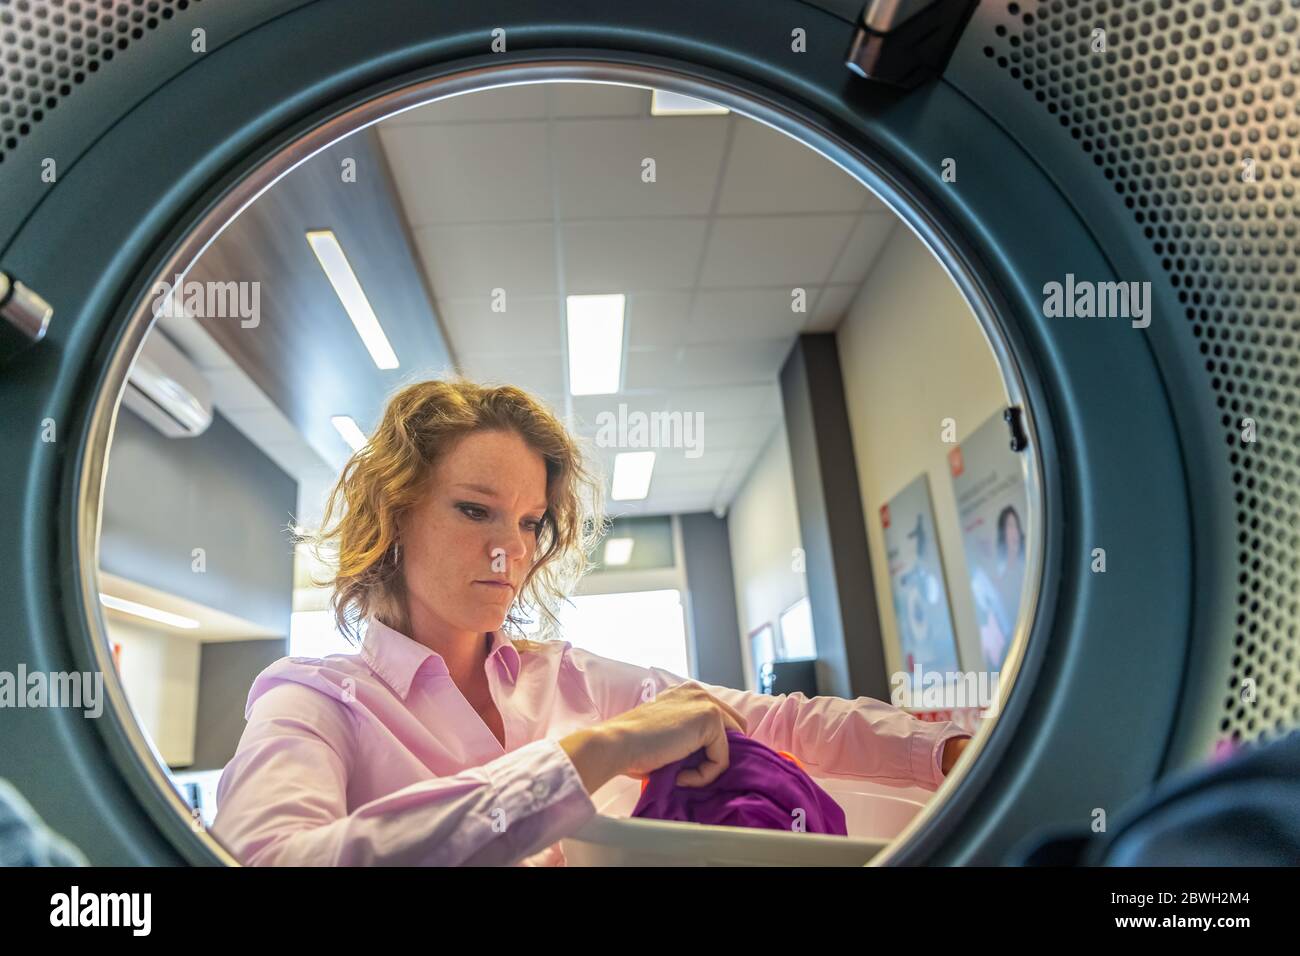 donna che mette i vestiti in un asciugatore in una lavanderia pubblica Foto Stock